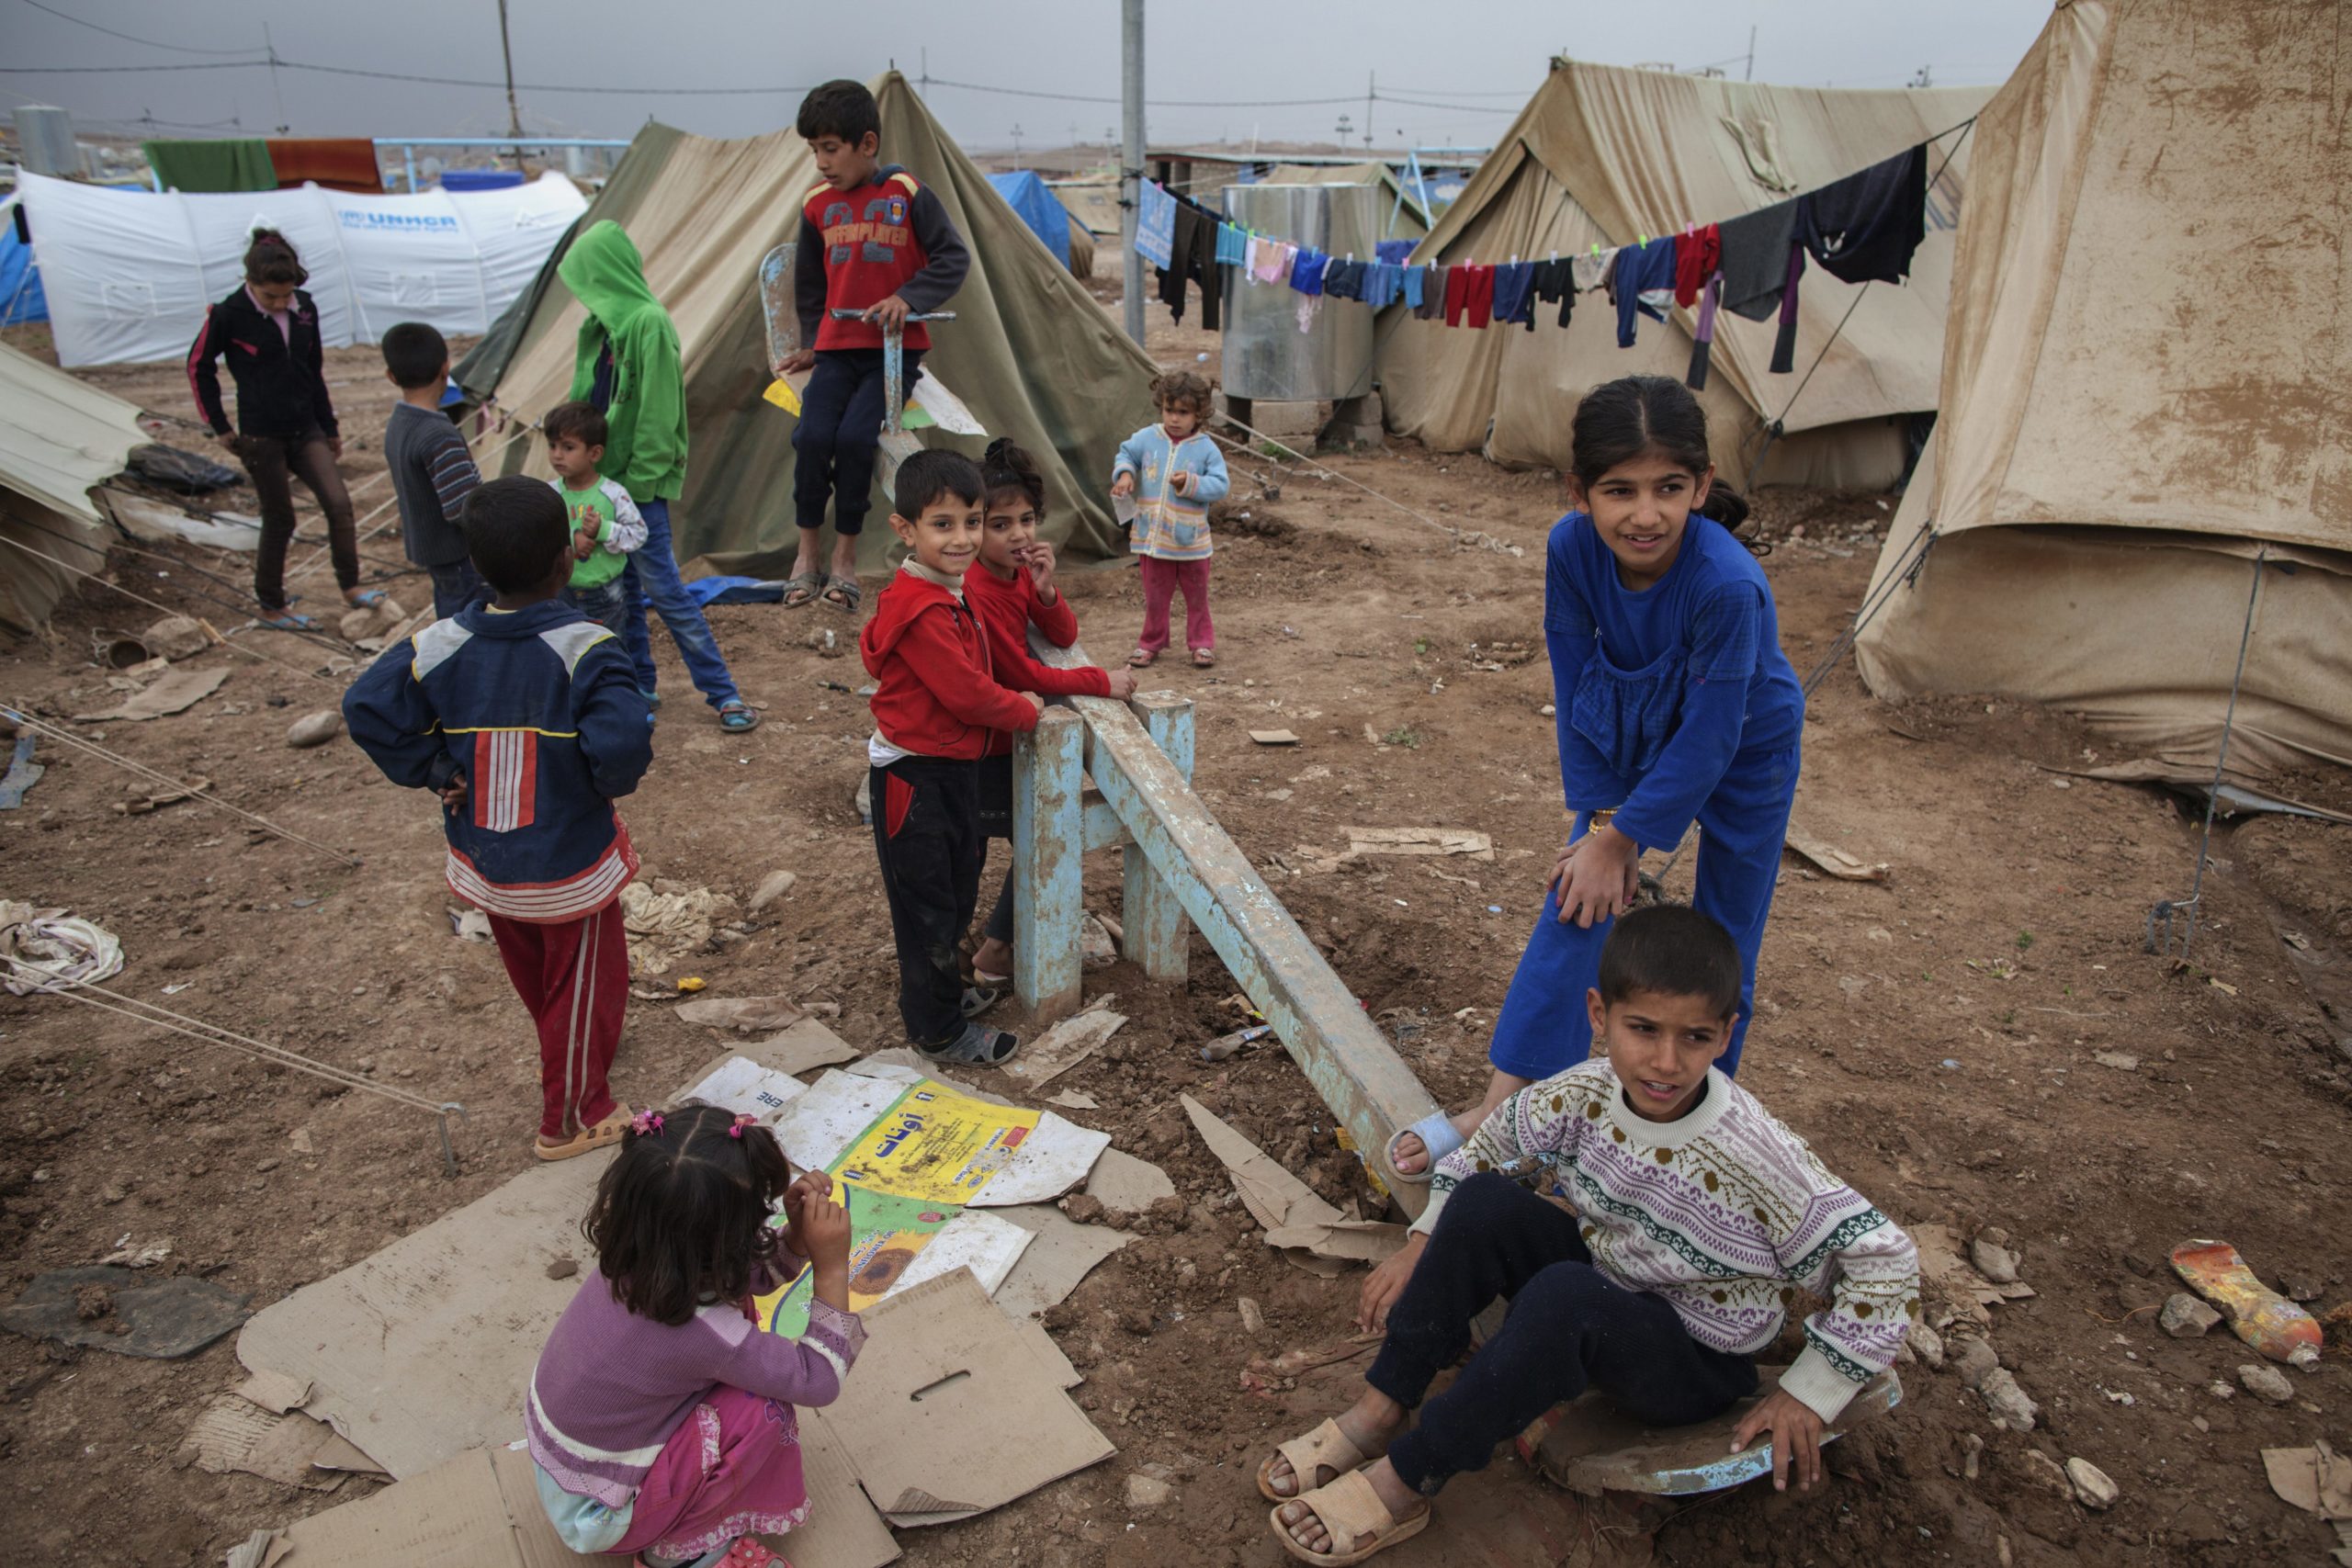 Daily Life in Domiz refugee camp, Kurdistan Region of Iraq